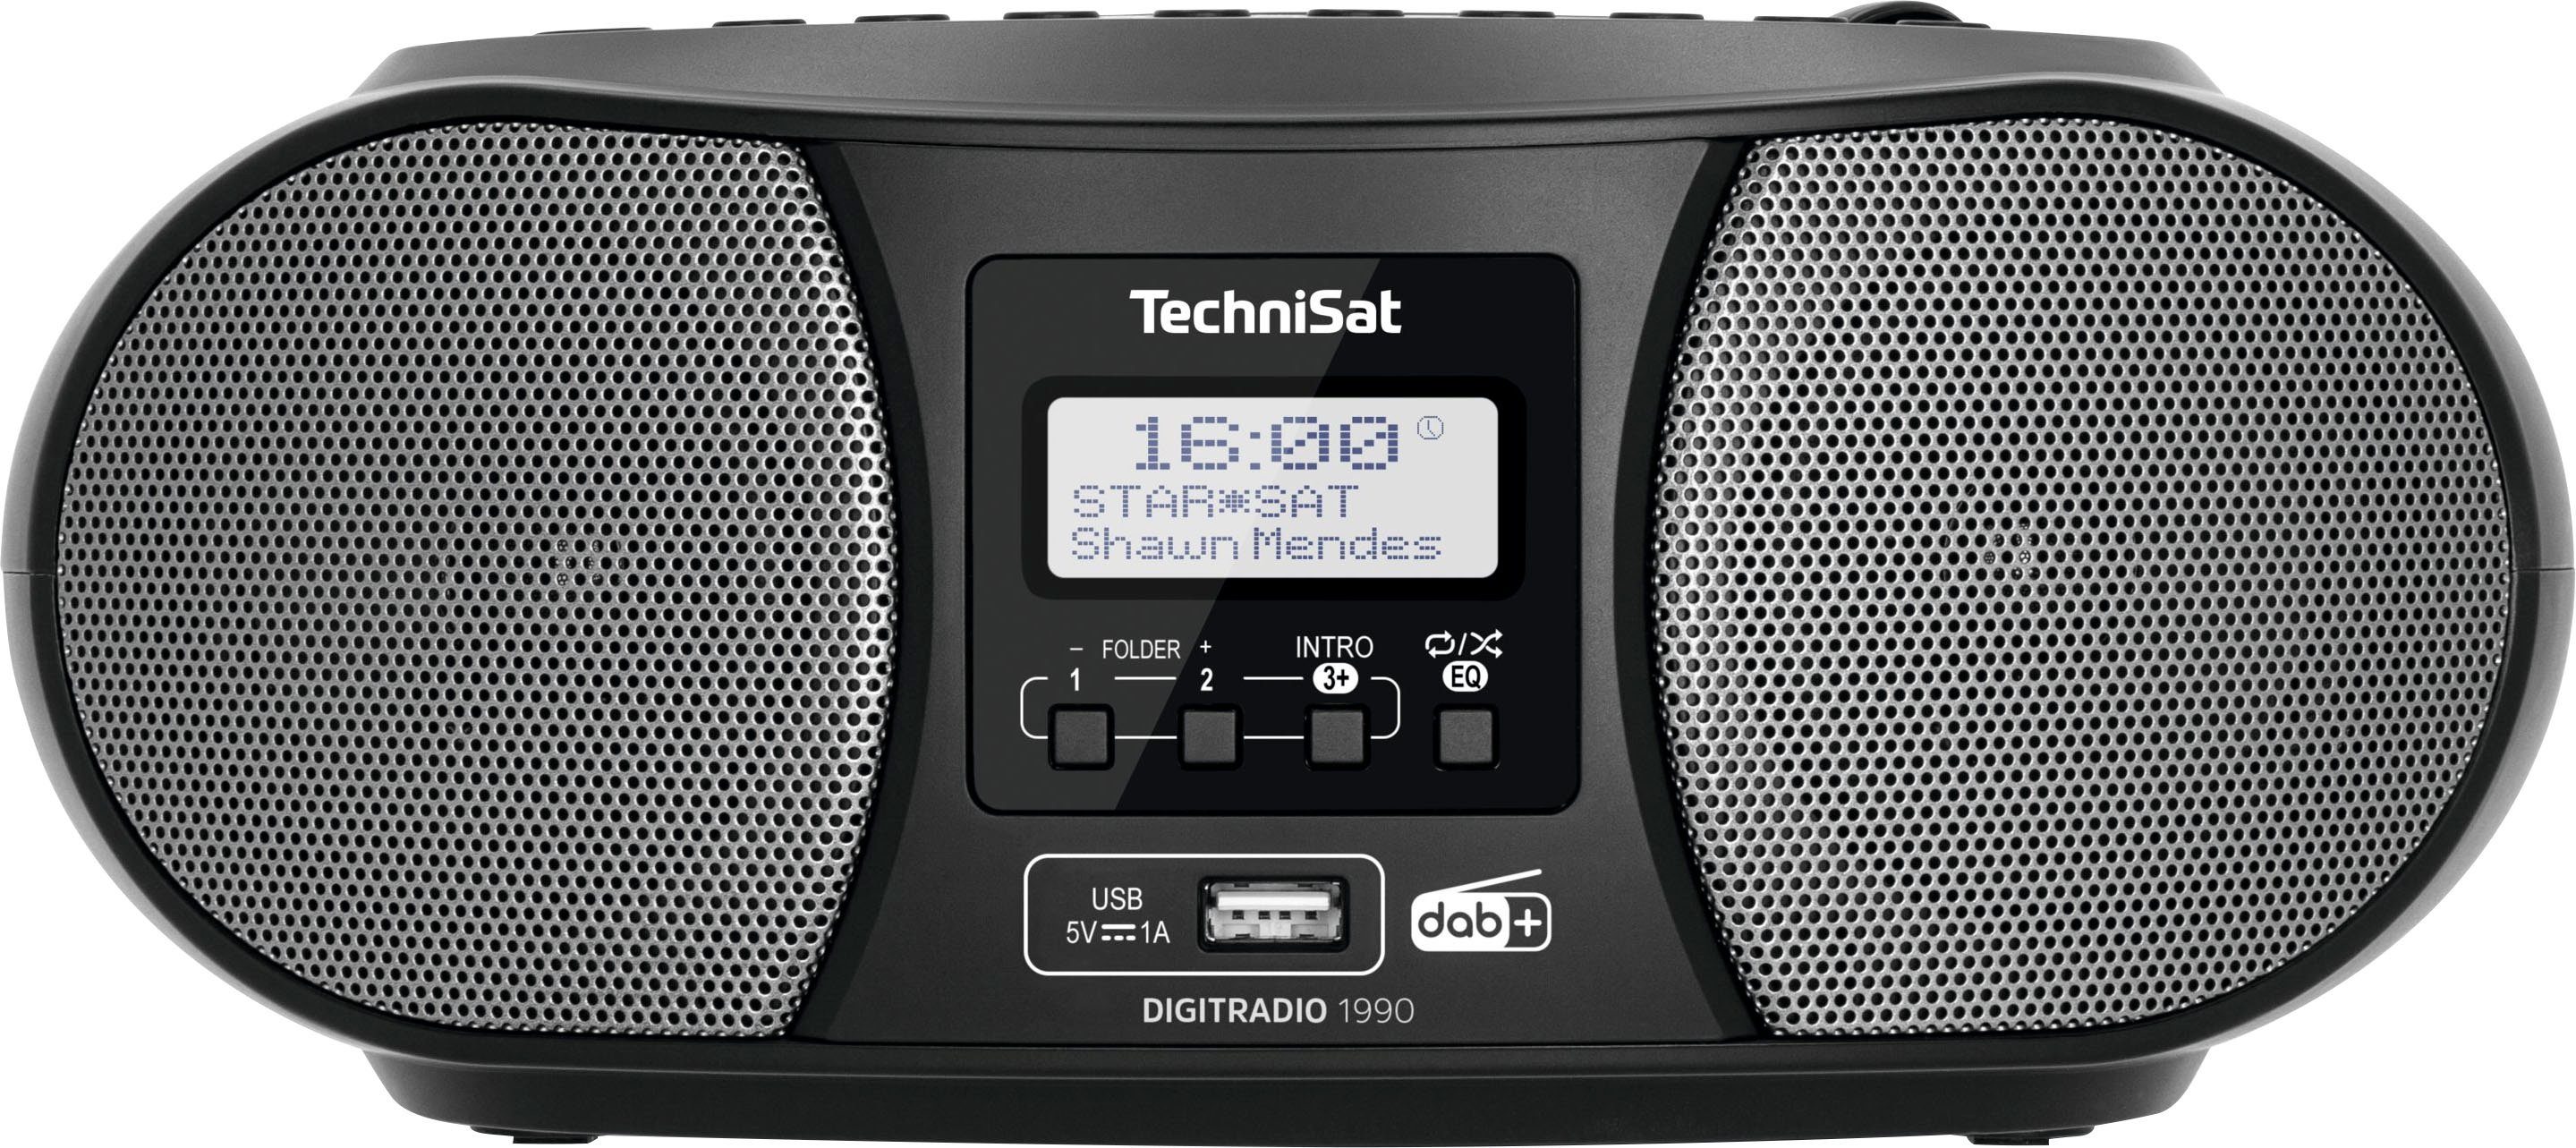 Digitradio Bluetooth, USB, FM-Tuner, möglich) 1990 (Digitalradio Batteriebetrieb CD-Player, Boombox DAB+, UKW, Stereo- schwarz (DAB), TechniSat mit